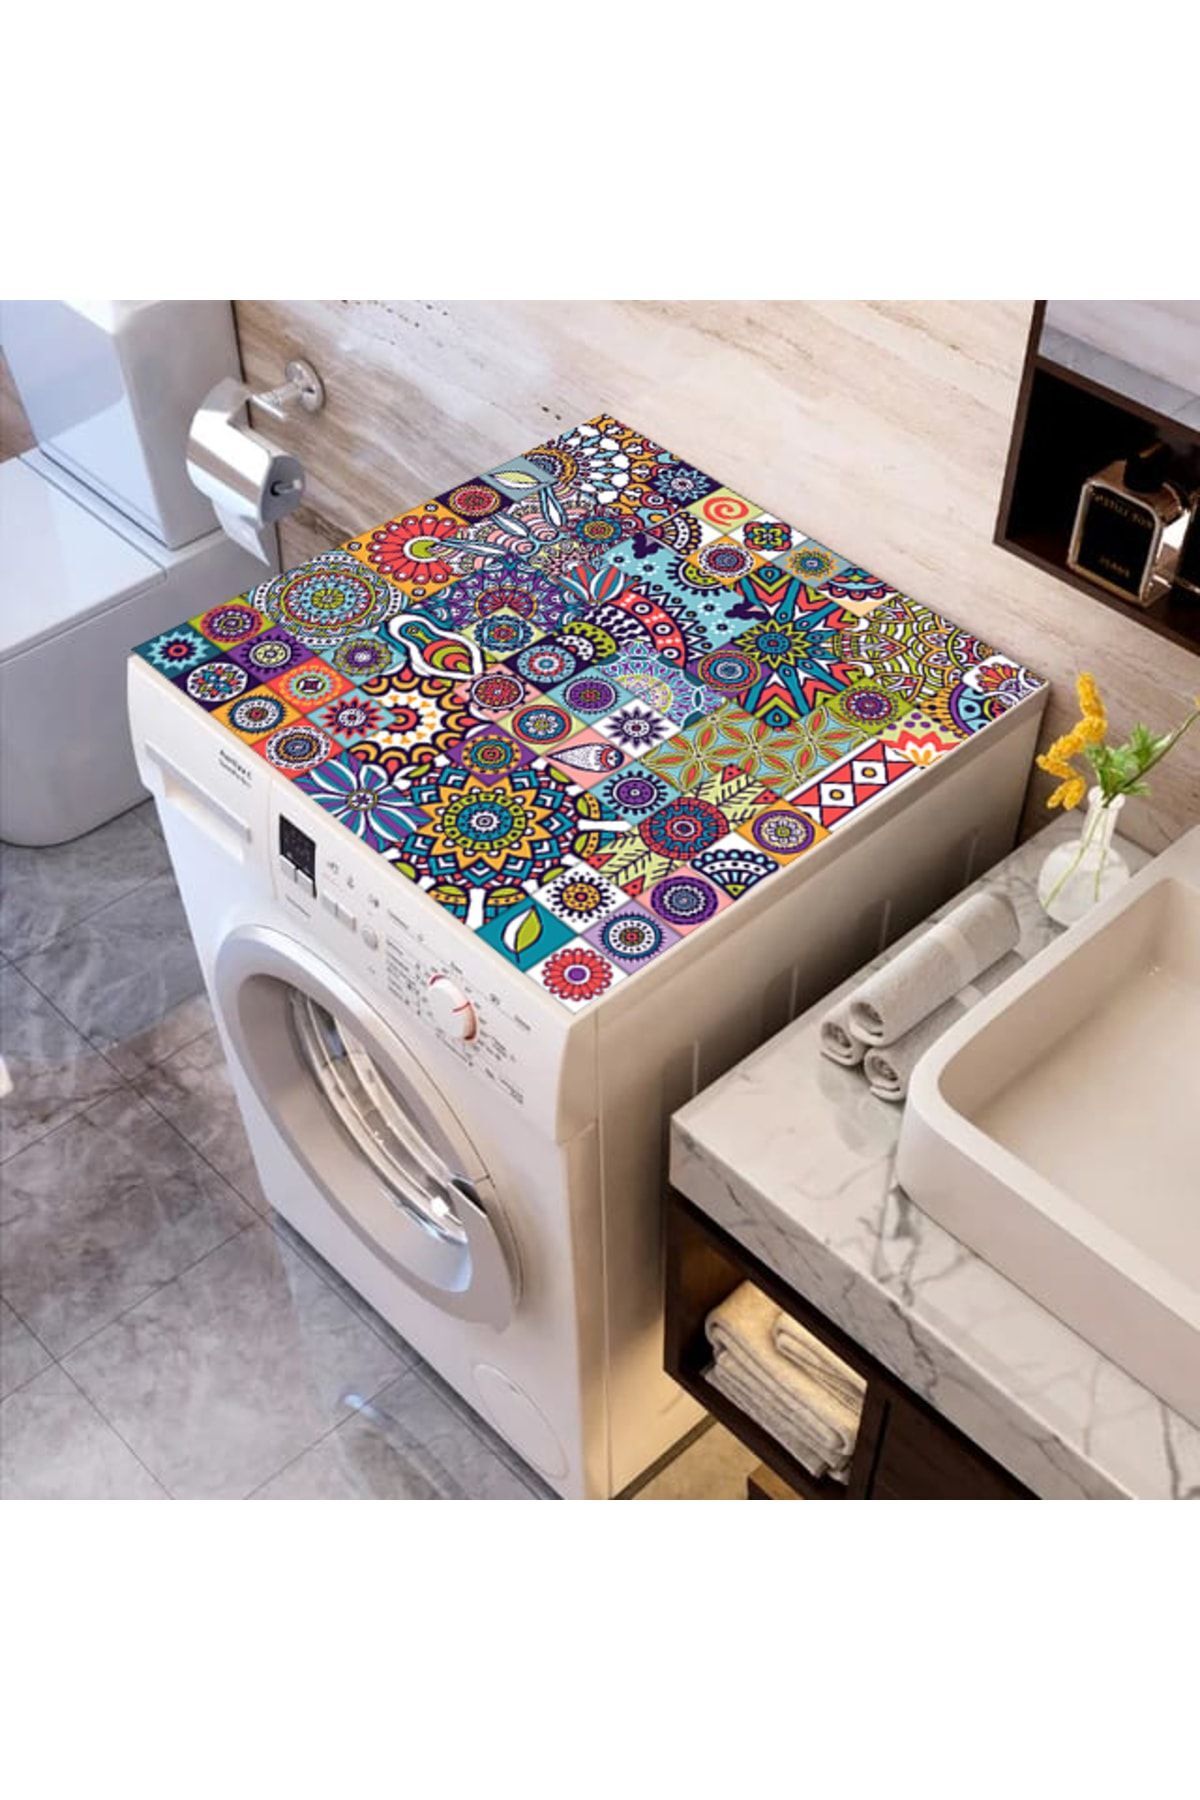 ALAMODECOR Renkli Baskılı Çamaşır Makine Örtüsü Kumaş Örtü Renkli Mandala 62 Cm X 62 Cm | Banyo Düzenleyici